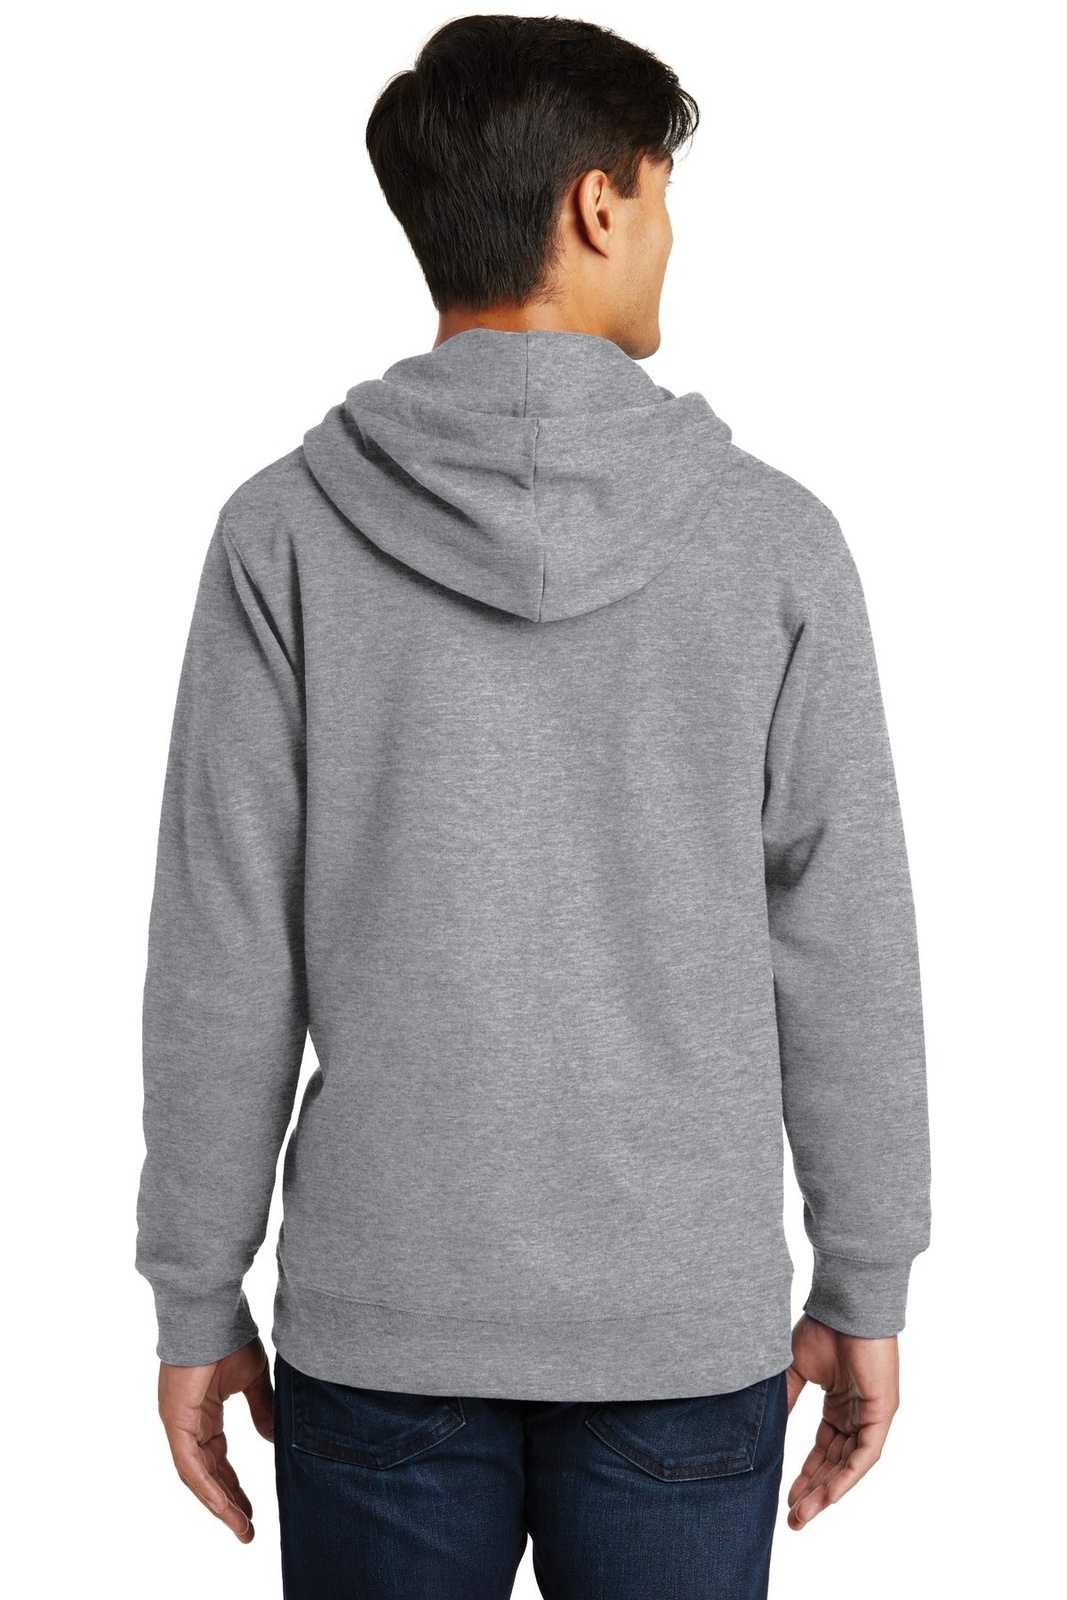 Port & Company PC850ZH Fan Favorite Fleece Full-Zip Hooded Sweatshirt - Athletic Heather - HIT a Double - 1